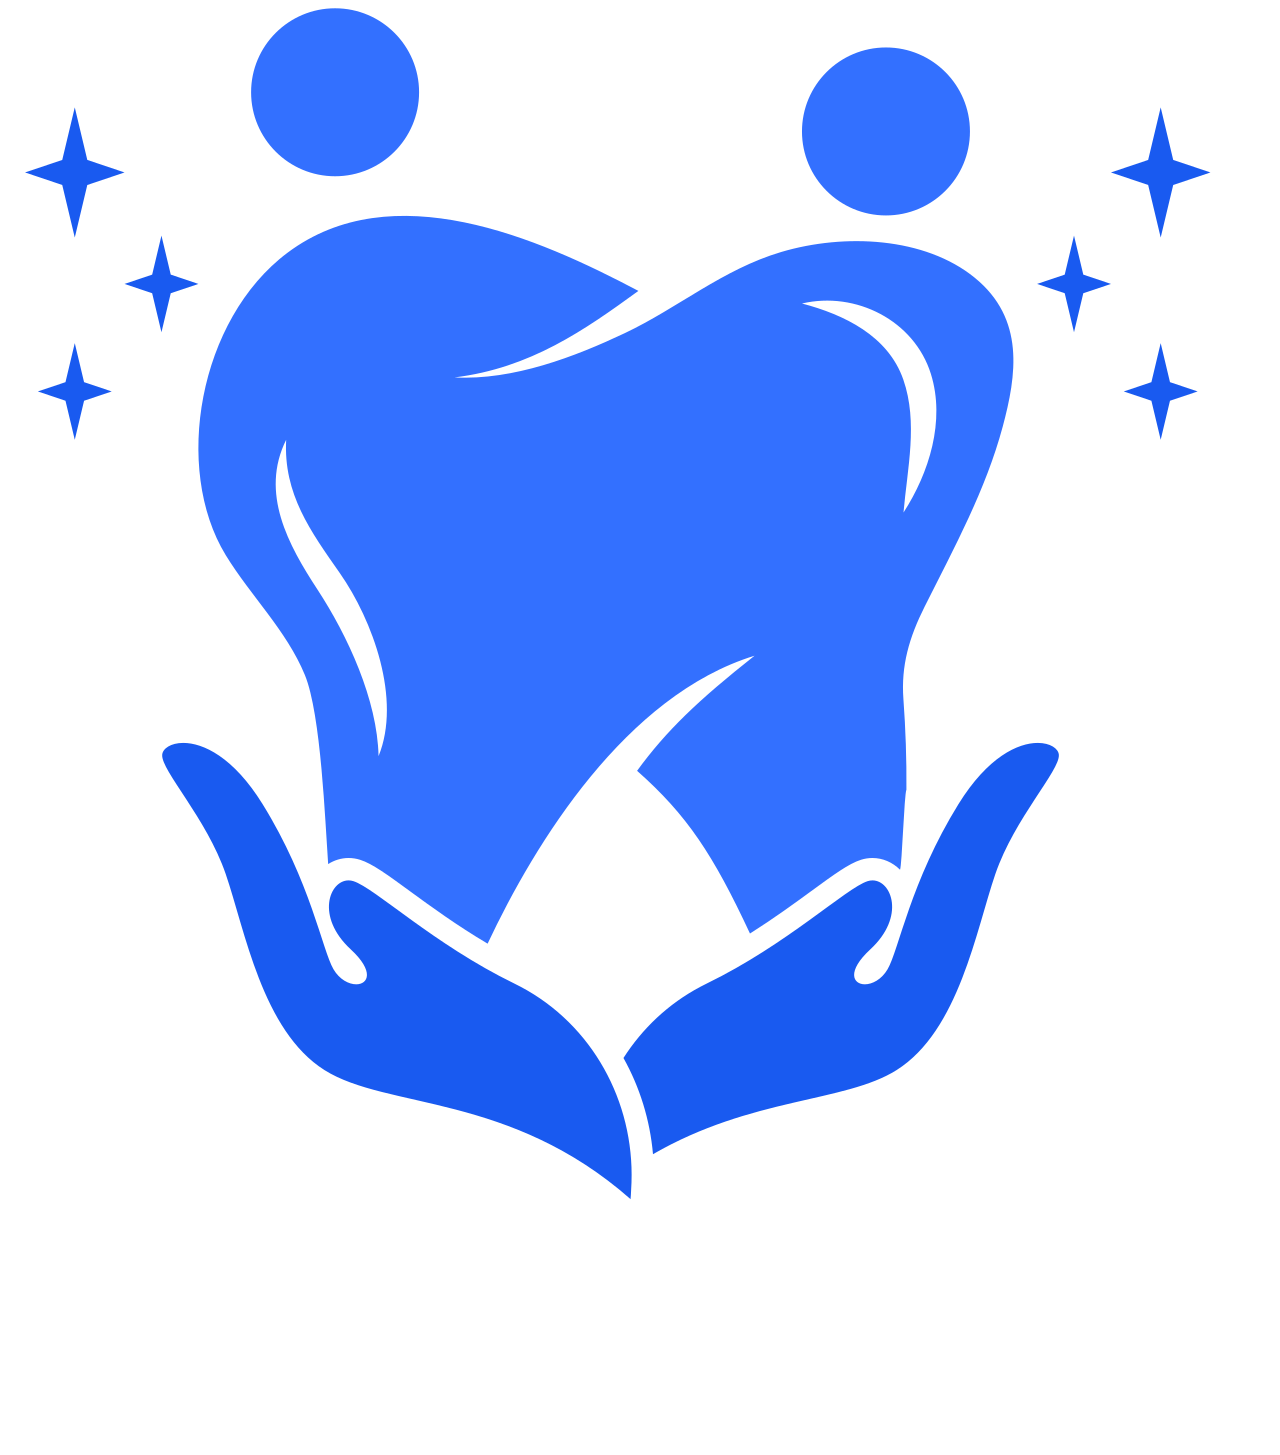 LOOLAK's logo